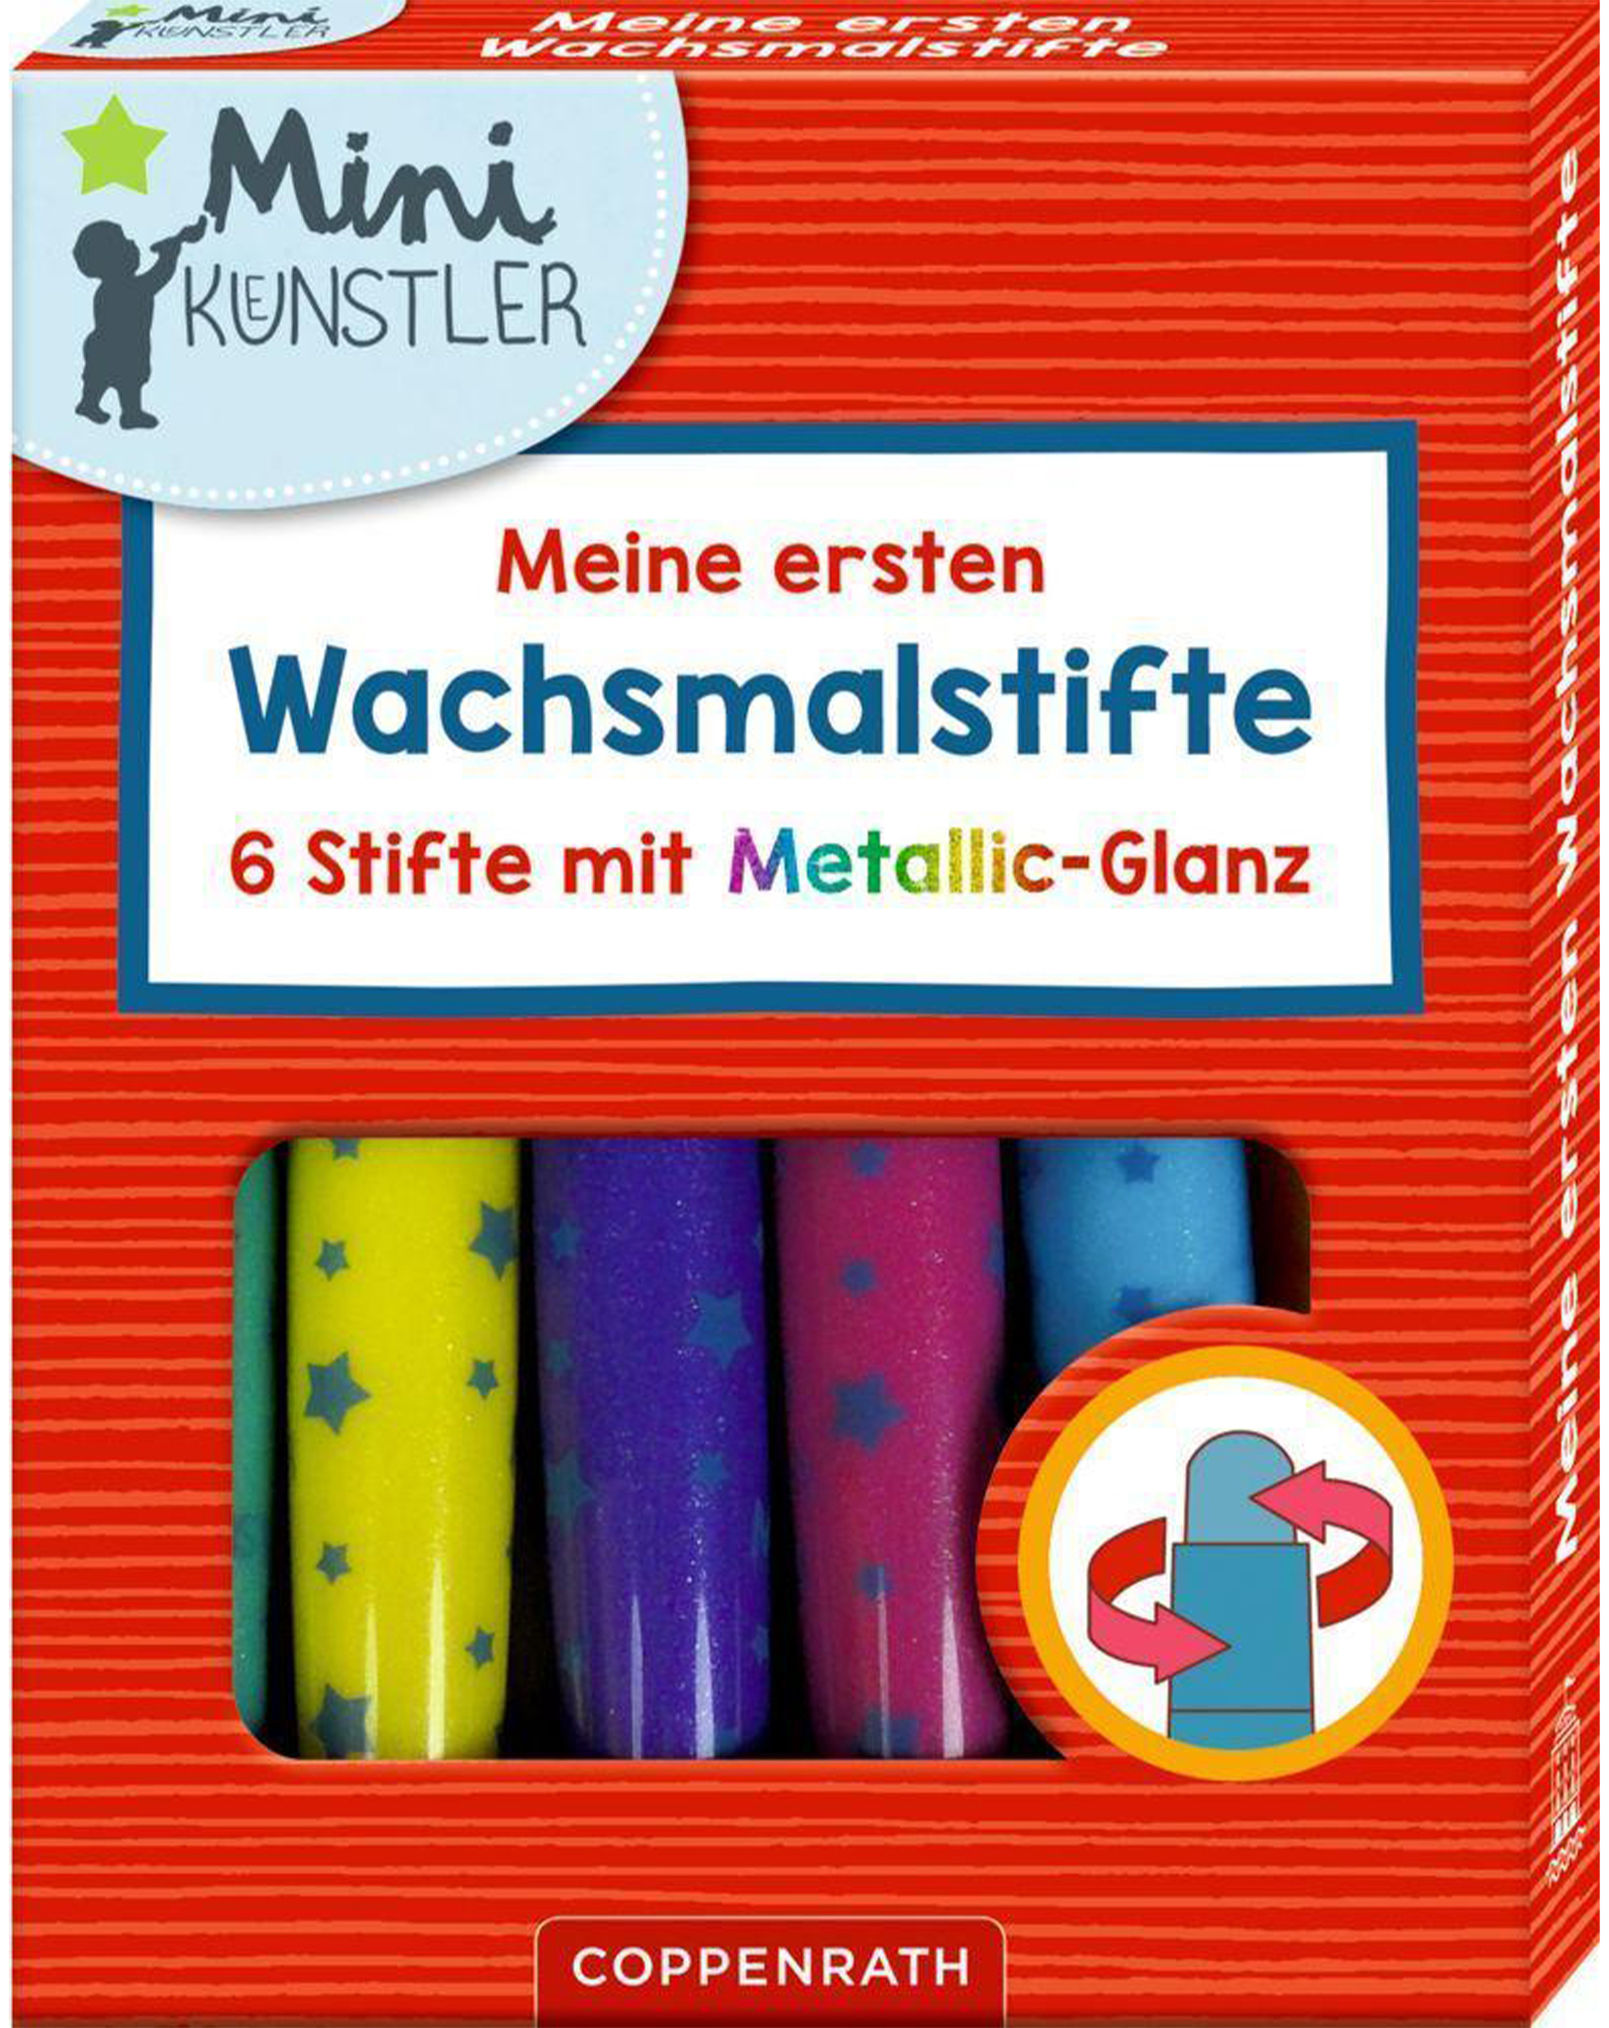 Wachsmalstifte MINI-KÜNSTLER in 6 Farben bestellen | Weltbild.at